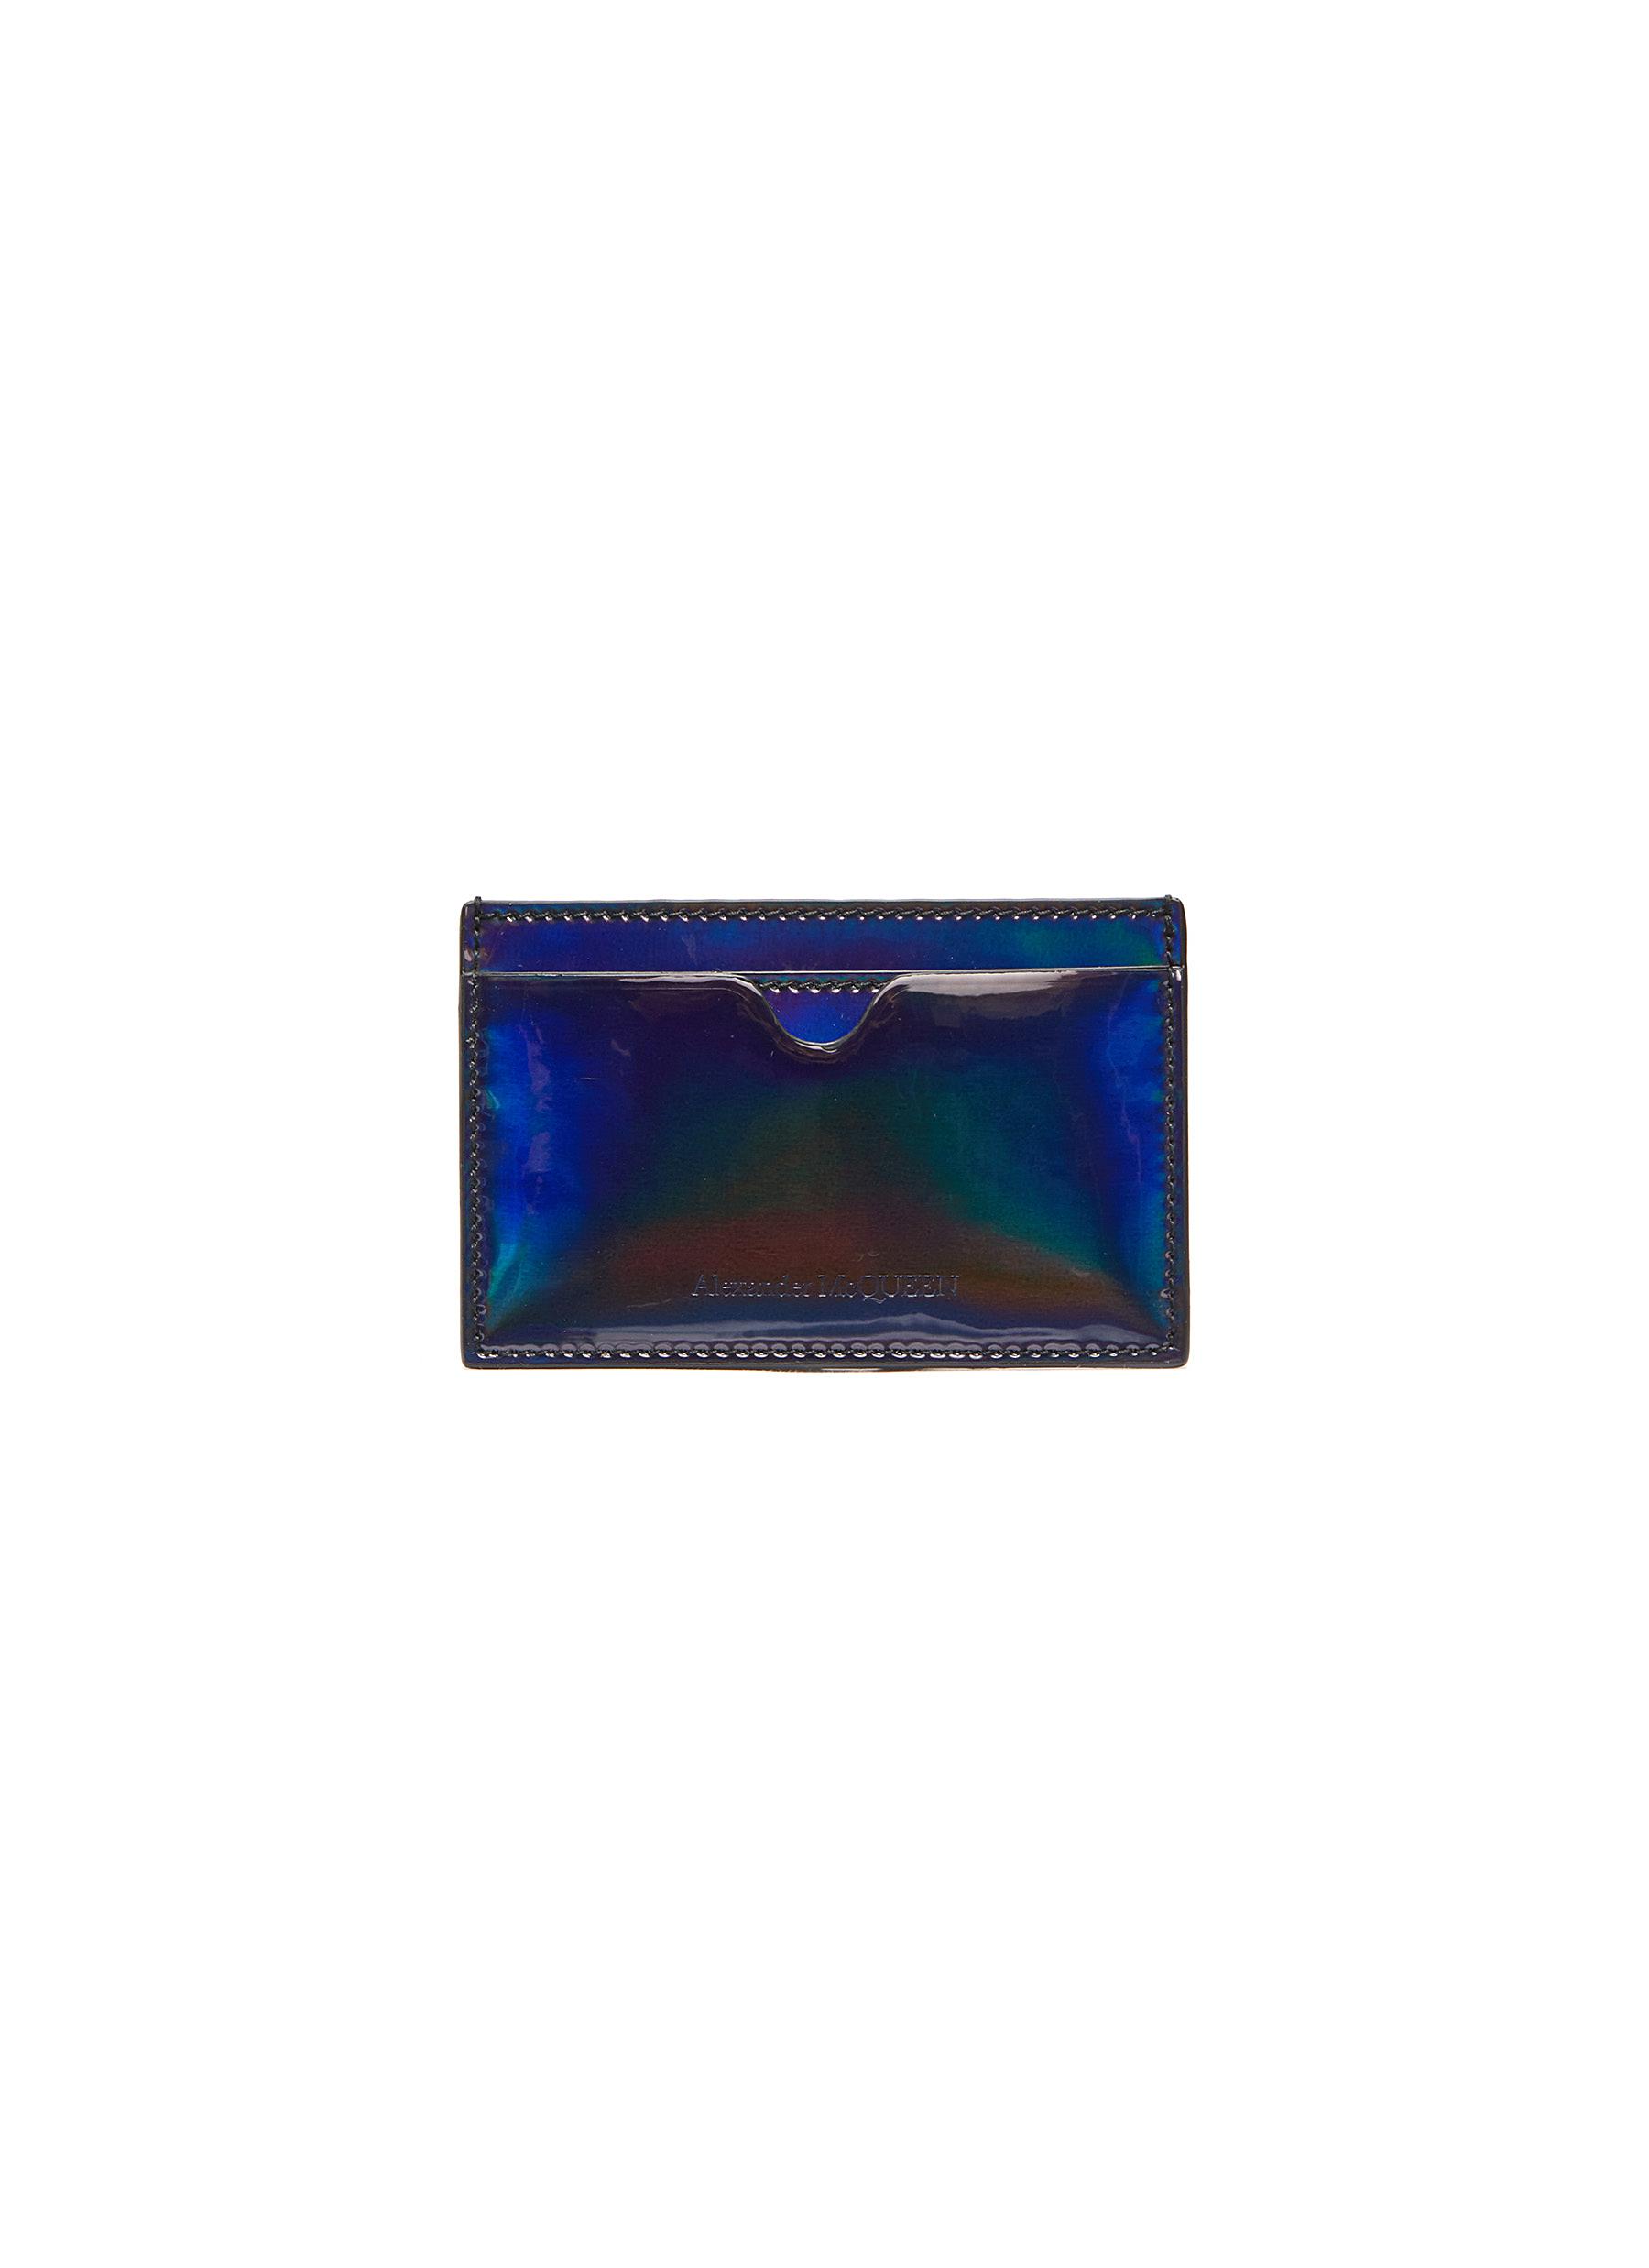 Alexander Mcqueen Iridescent Leather Card Holder | ModeSens